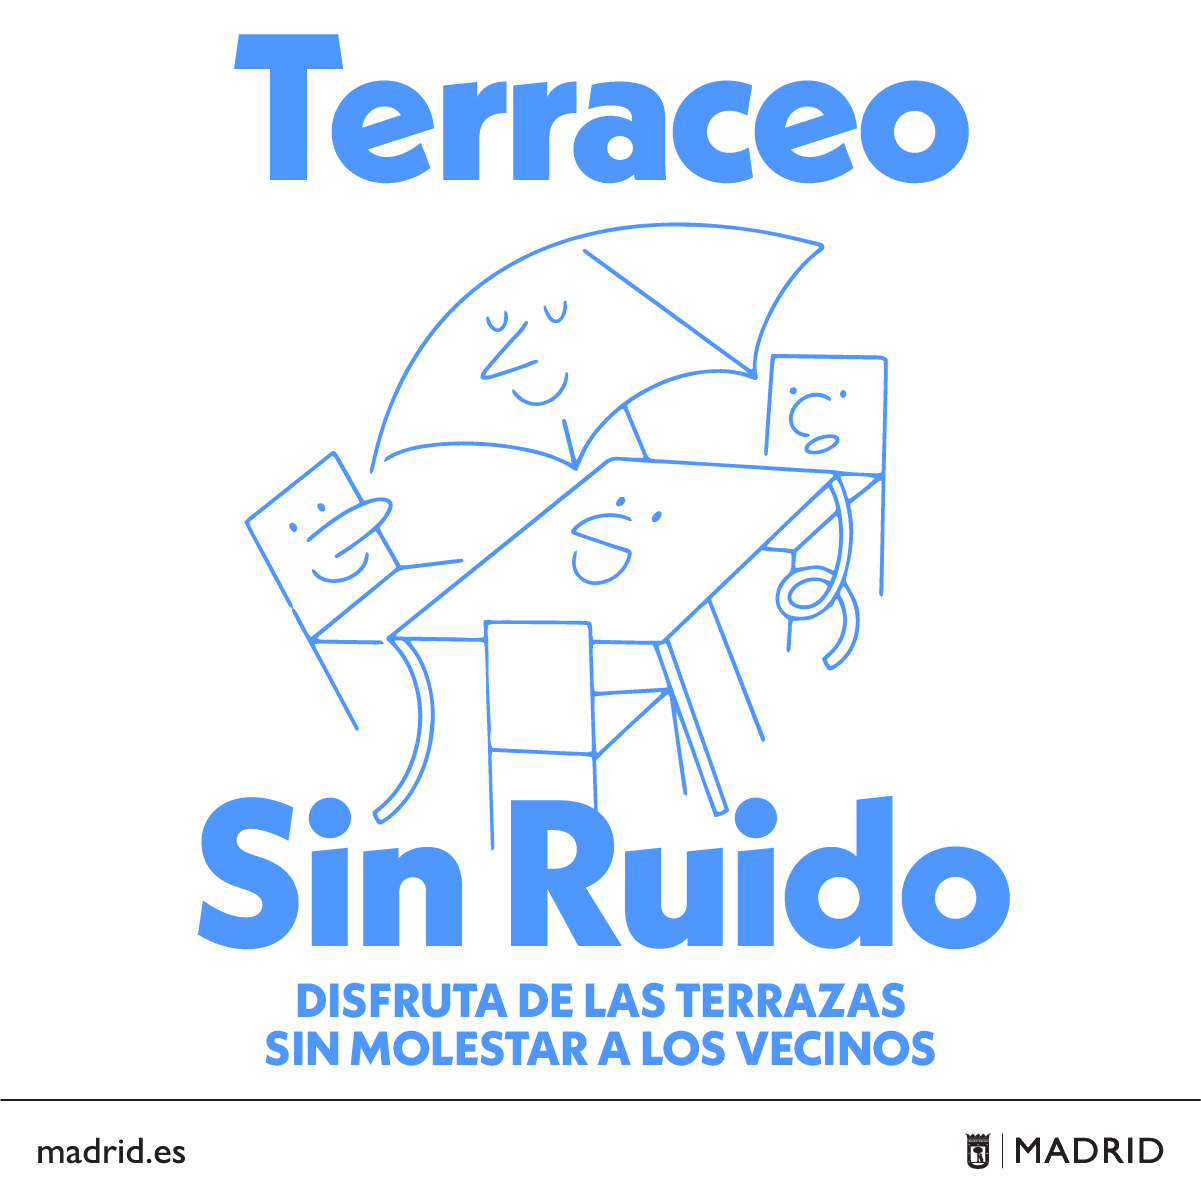 El Ayuntamiento de Madrid lanza una campaña de concienciación para equilibrar el ocio en las terrazas con el descanso vecinal - La Viña